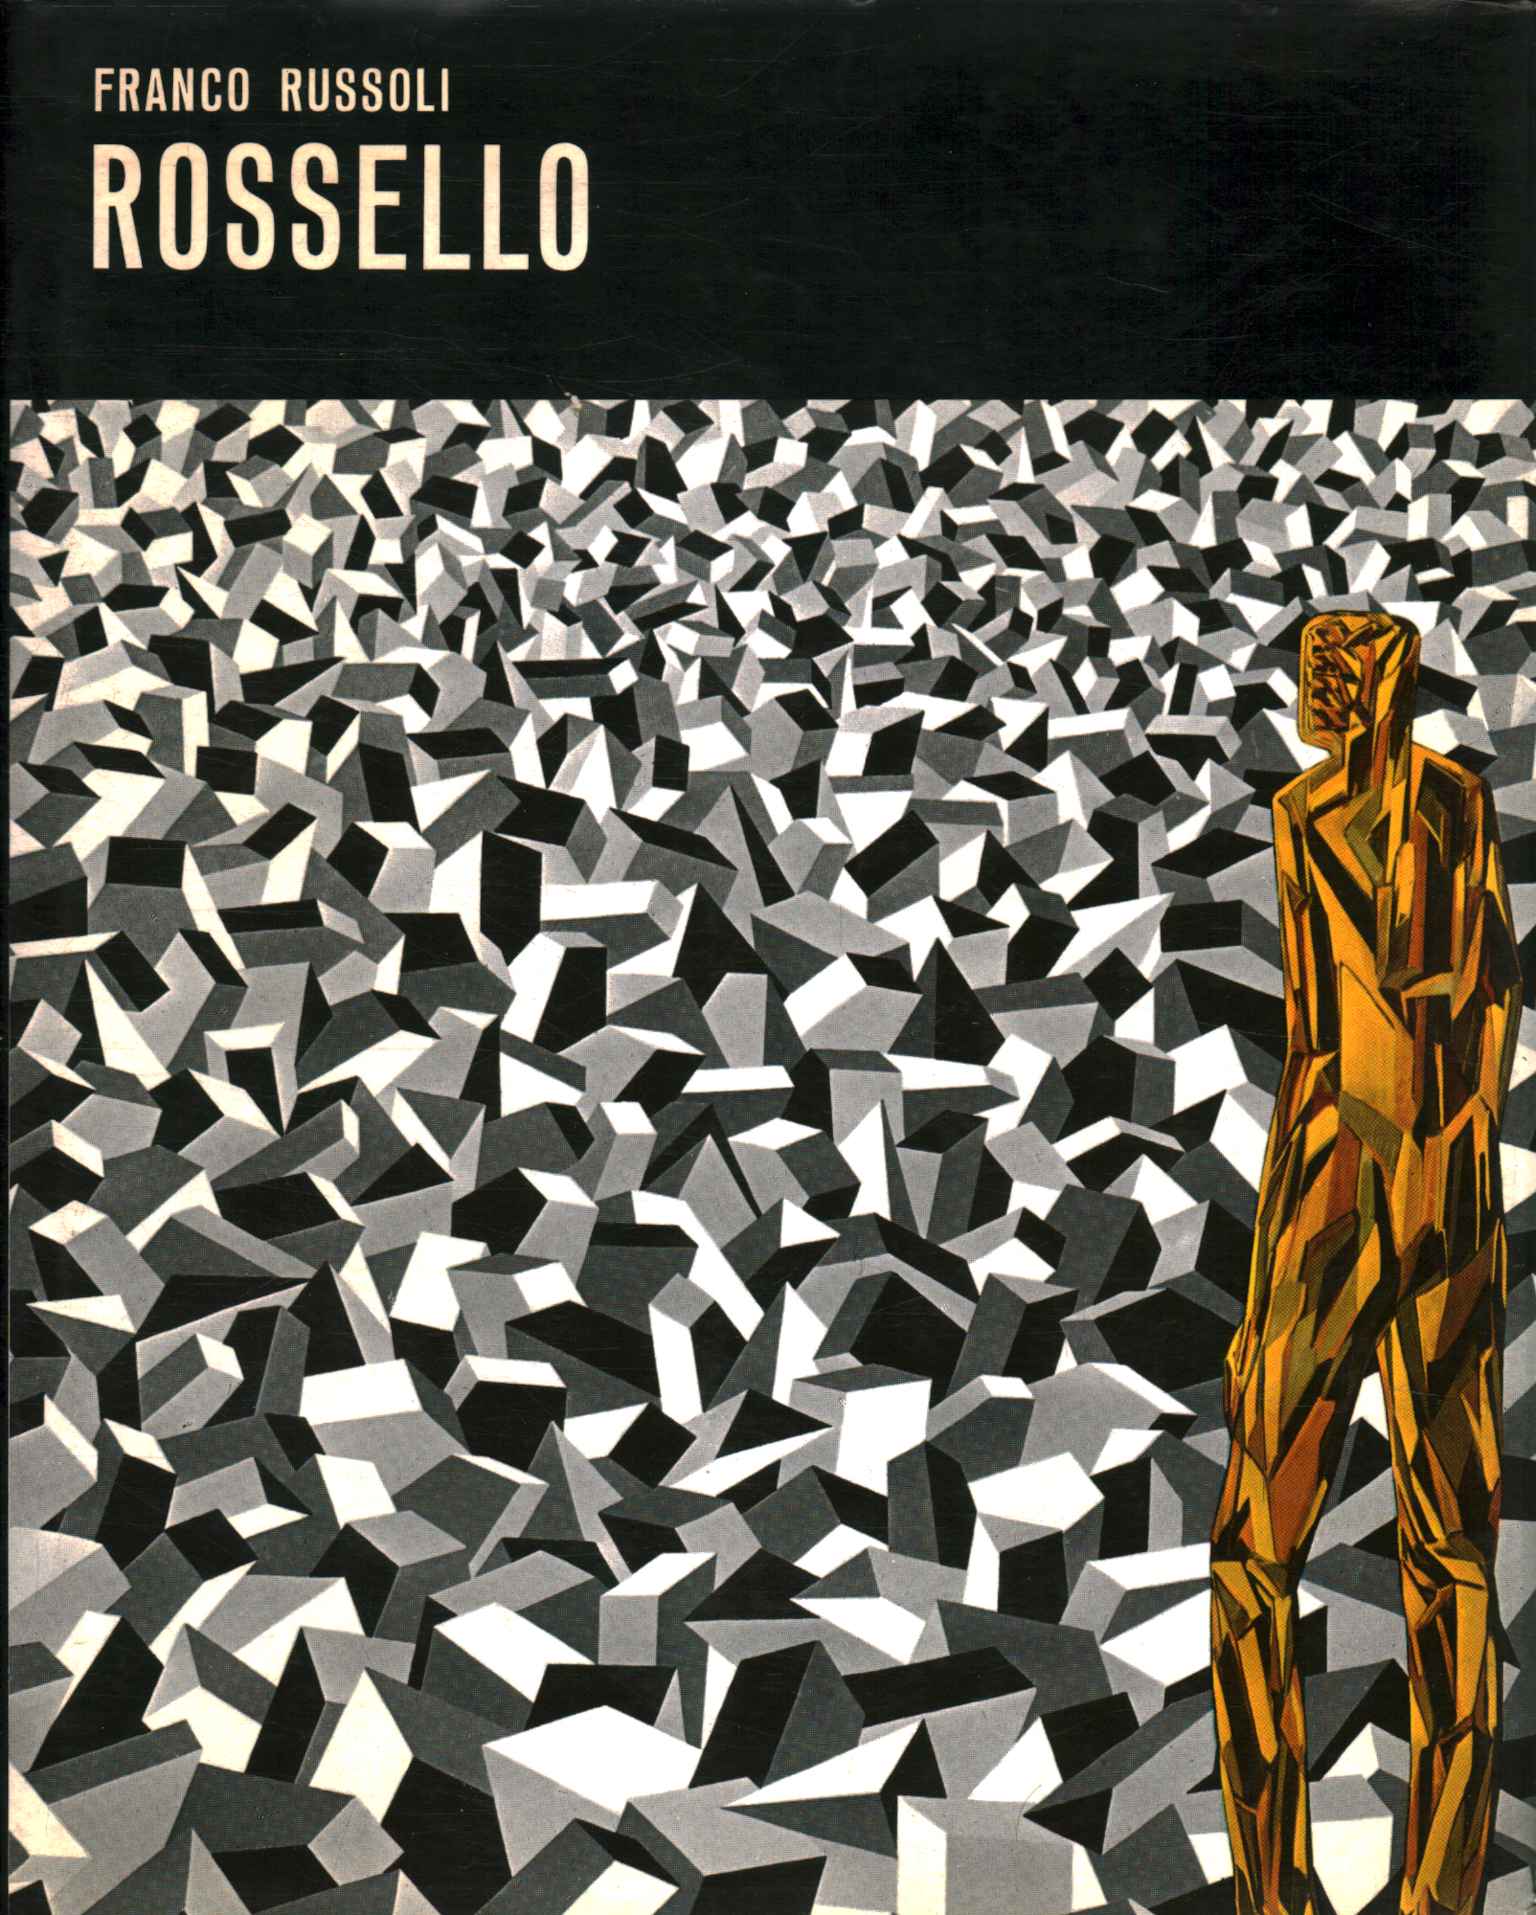 Libros - Arte - Contemporáneo, Franco Russoli Rosselló